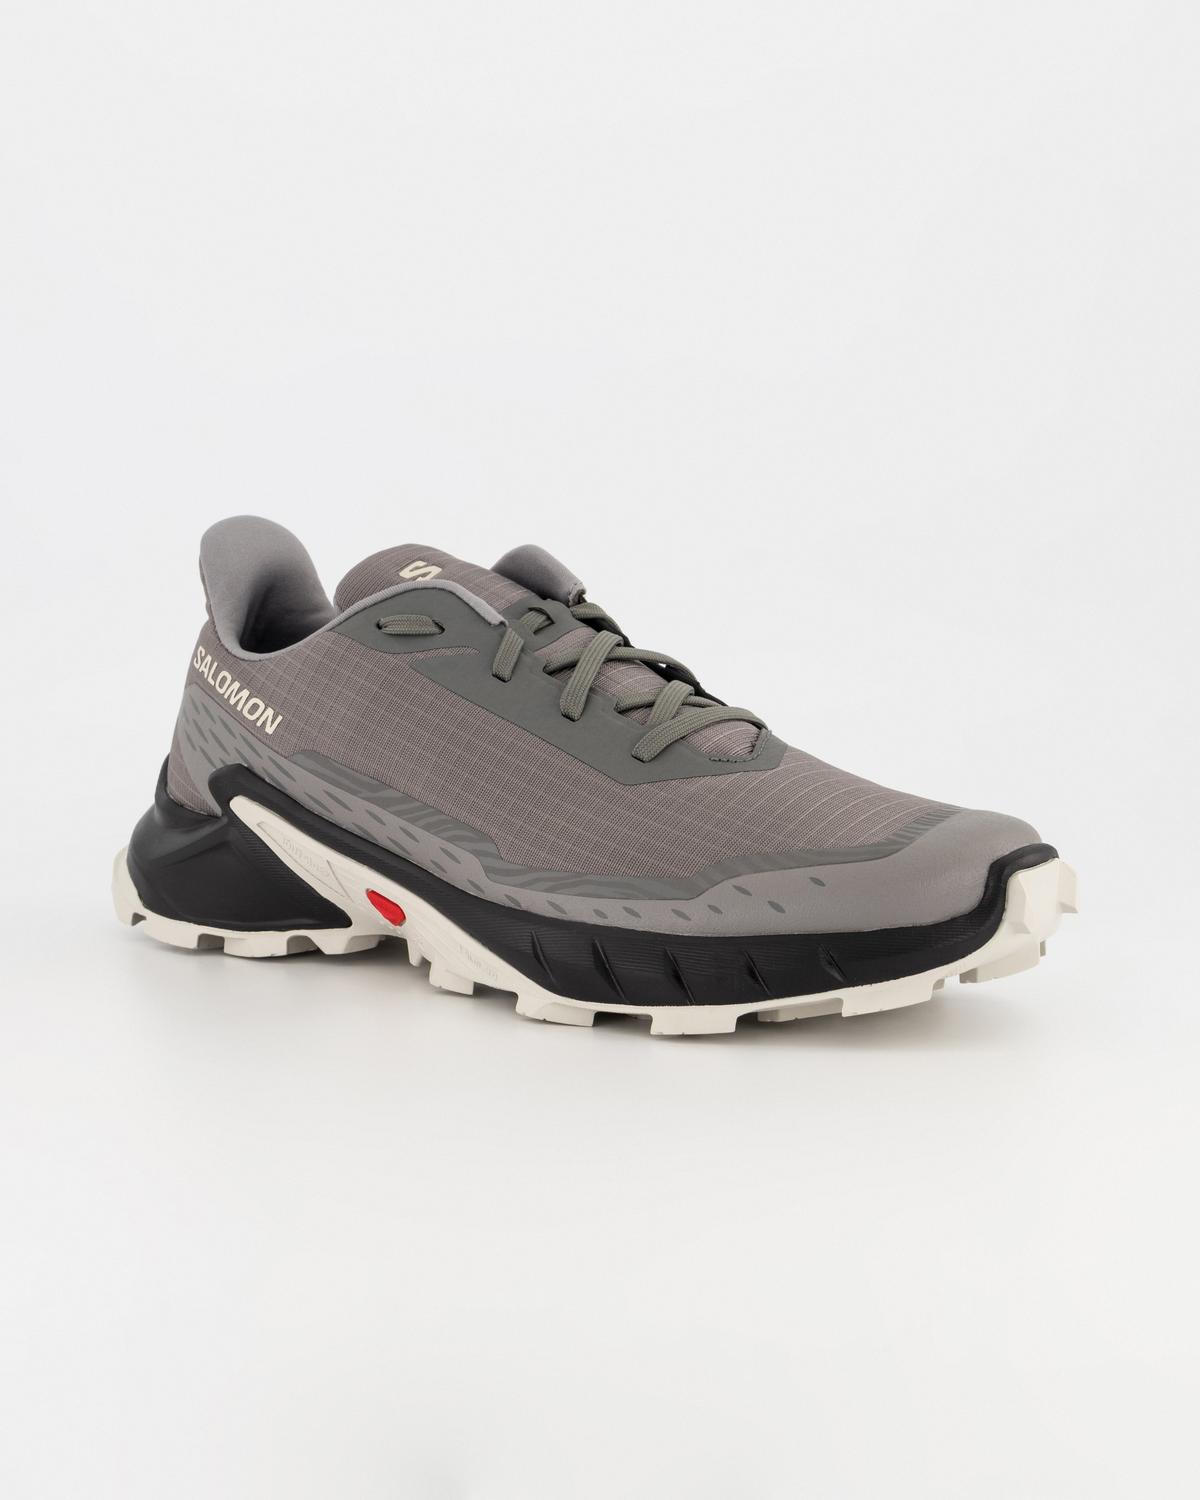 Salomon Men’s ALPHACROSS 5 Trail Running Shoes  -  Pewter